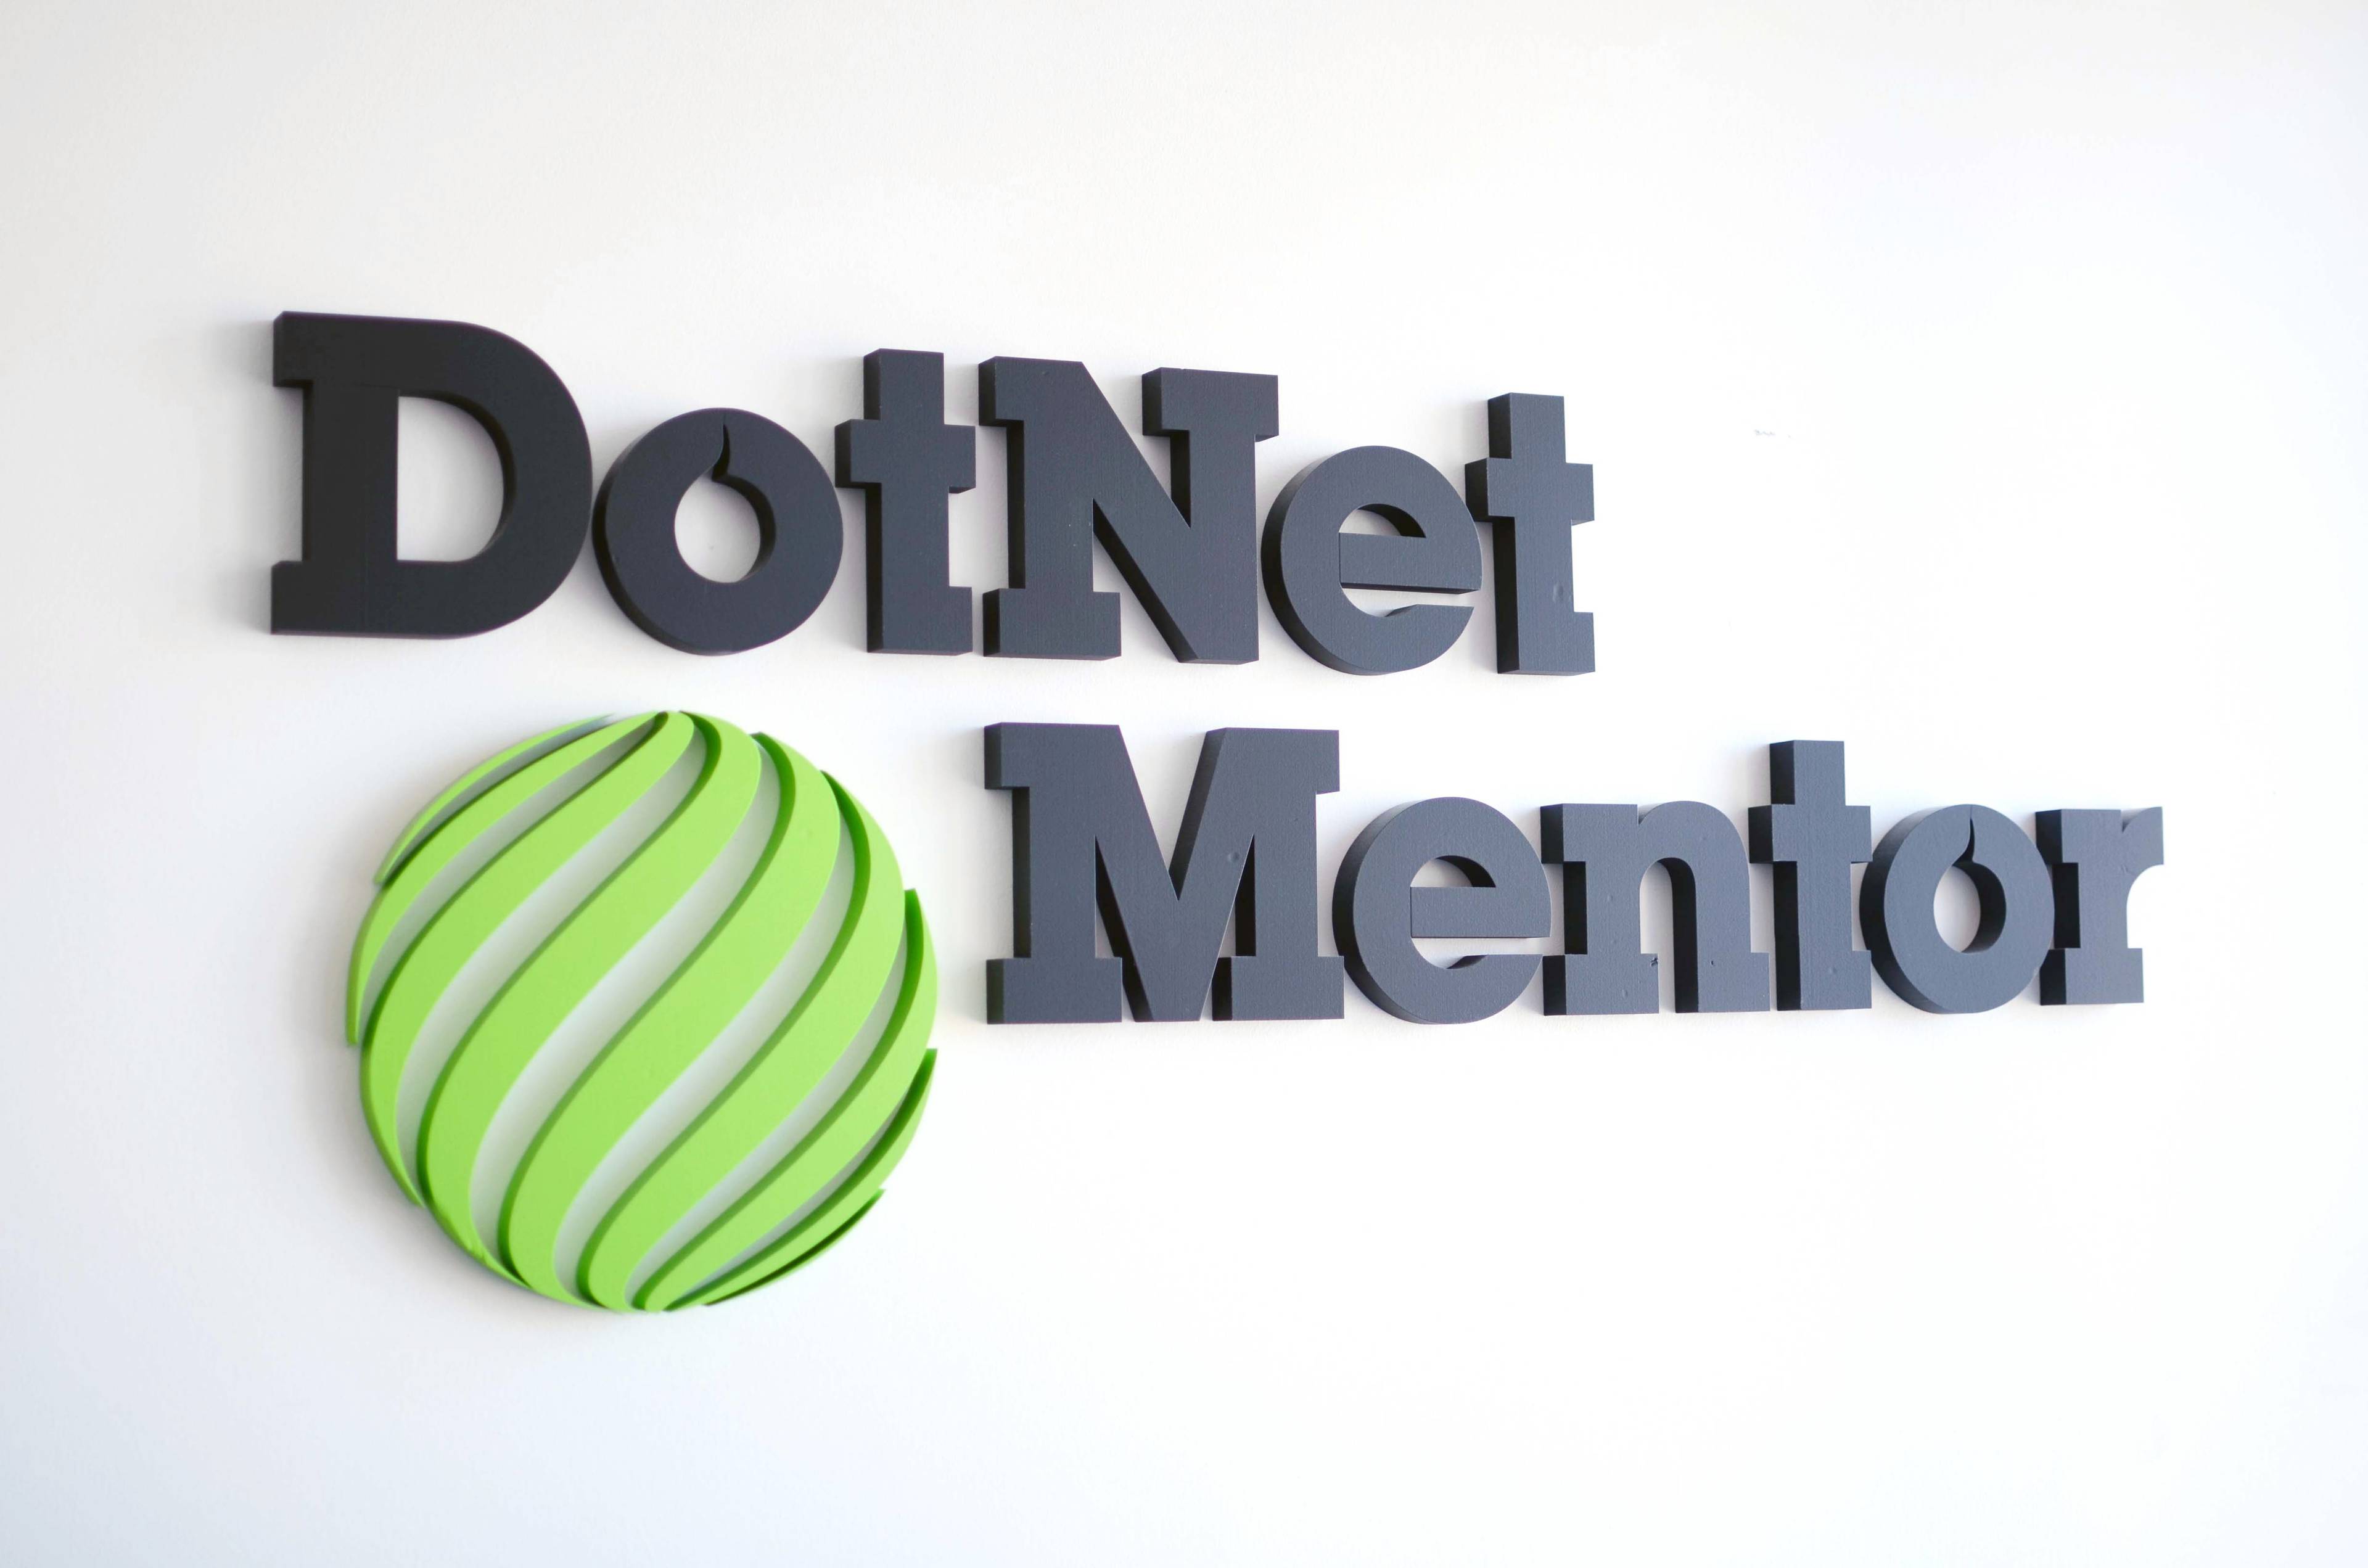 Dotnet mentor skylt